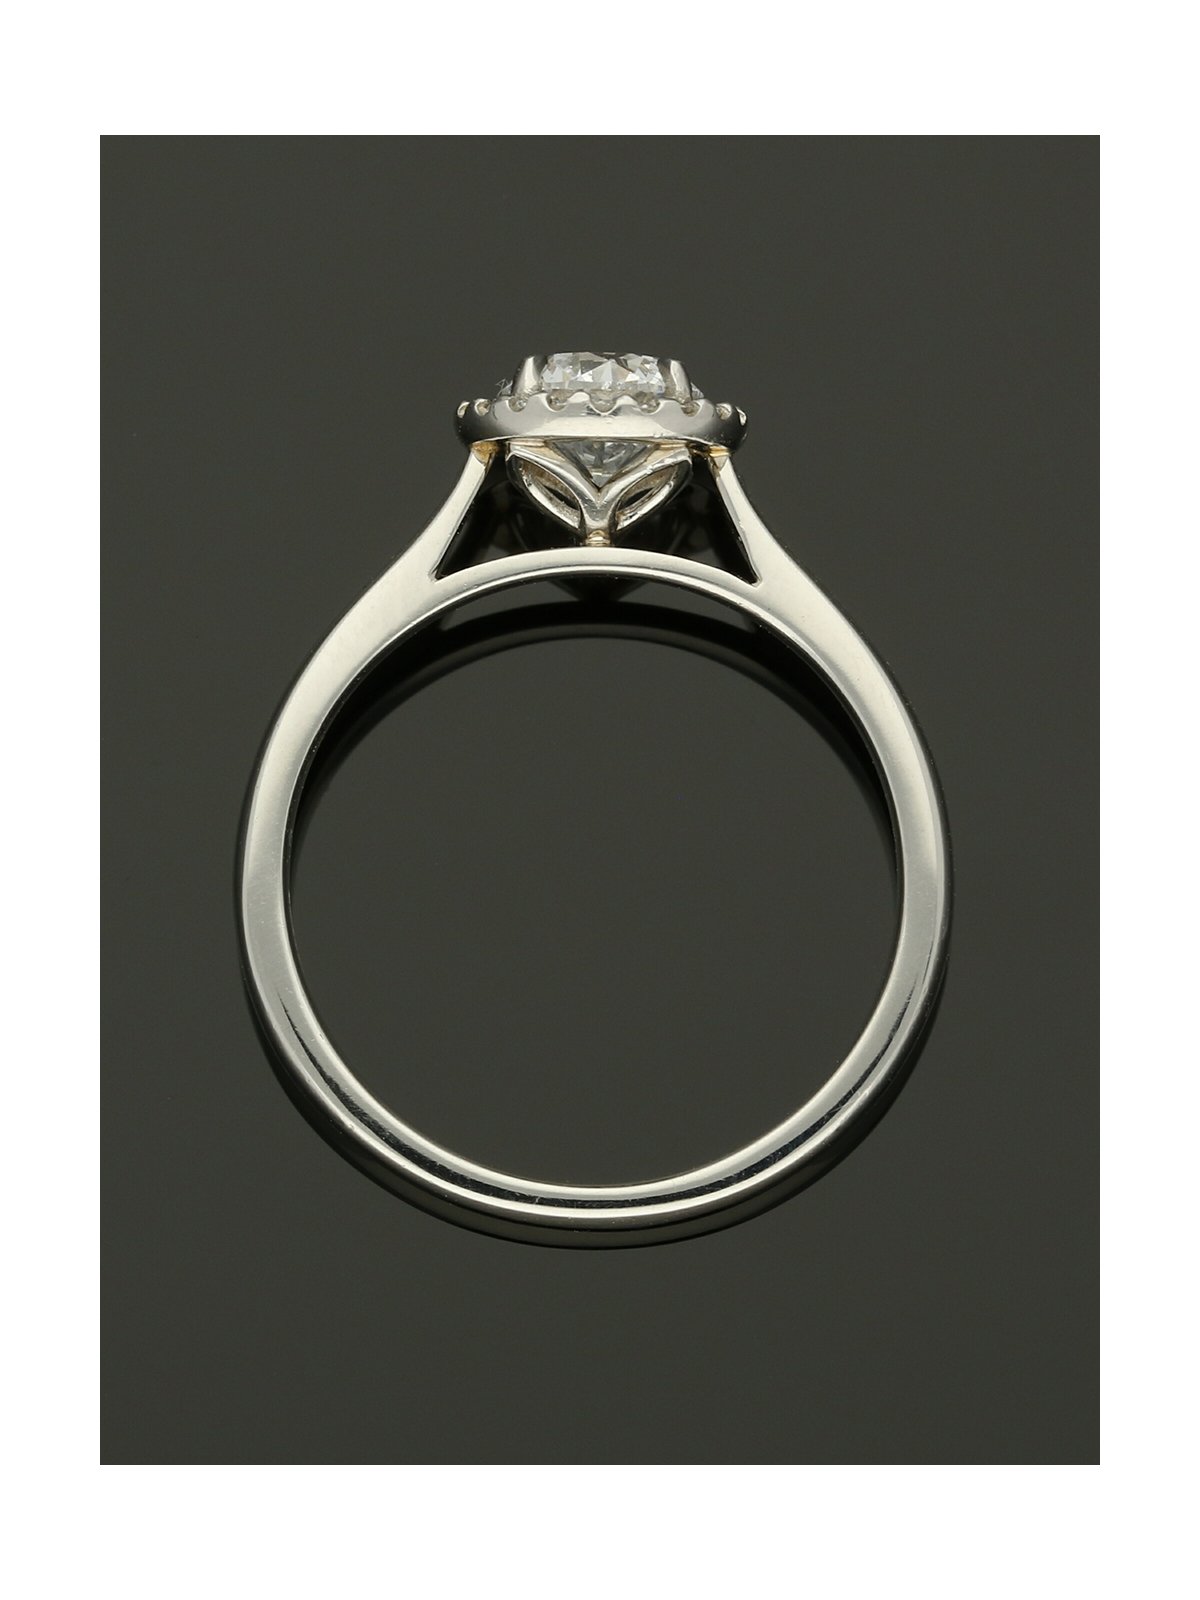 Diamond Halo Engagement Ring 0.70ct Certificated Round Brilliant Cut in Platinum